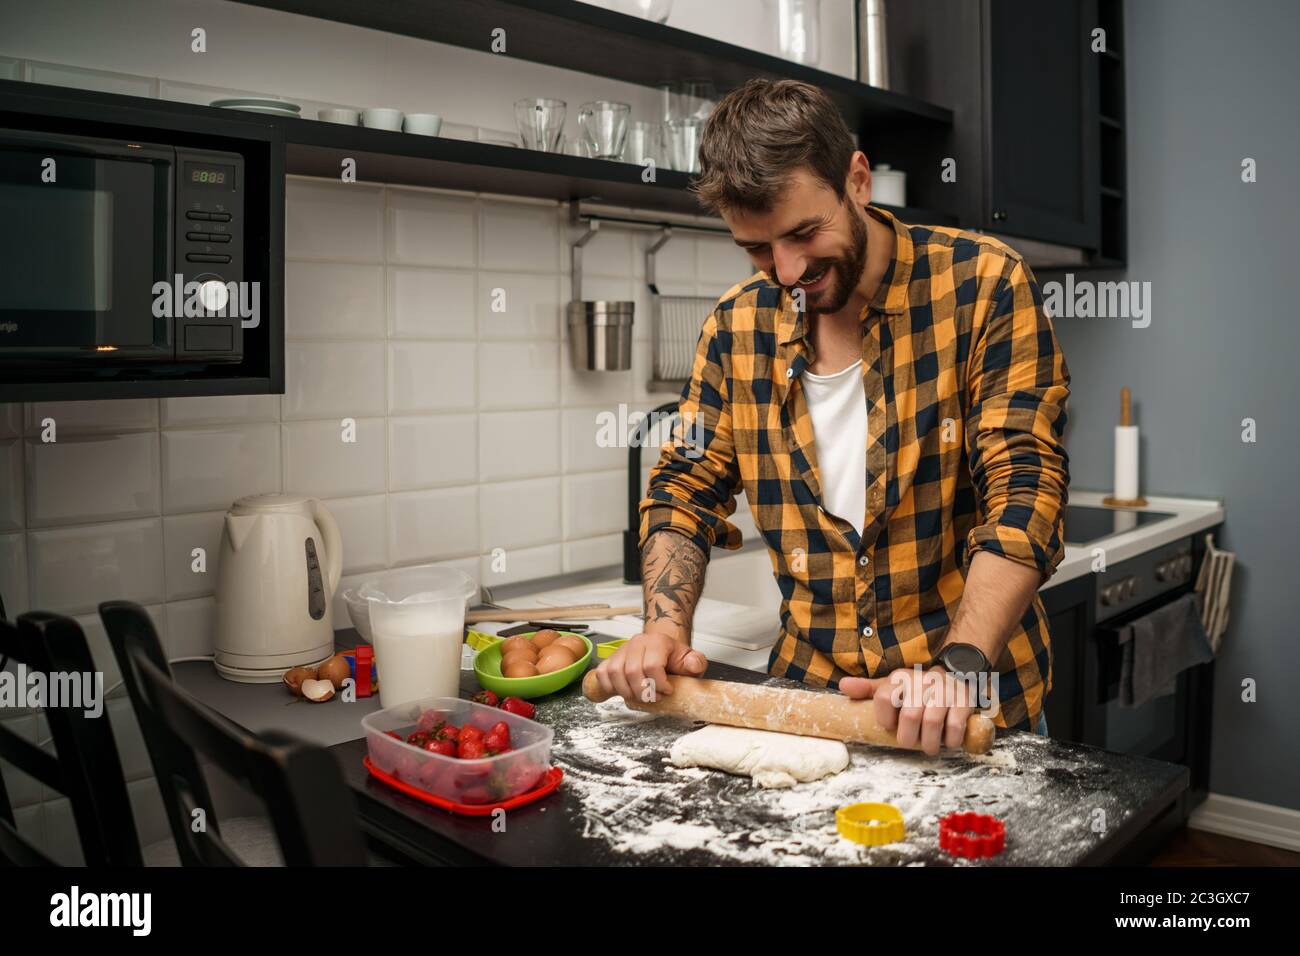 Der junge Mann macht in seiner Küche Kekse. Stockfoto